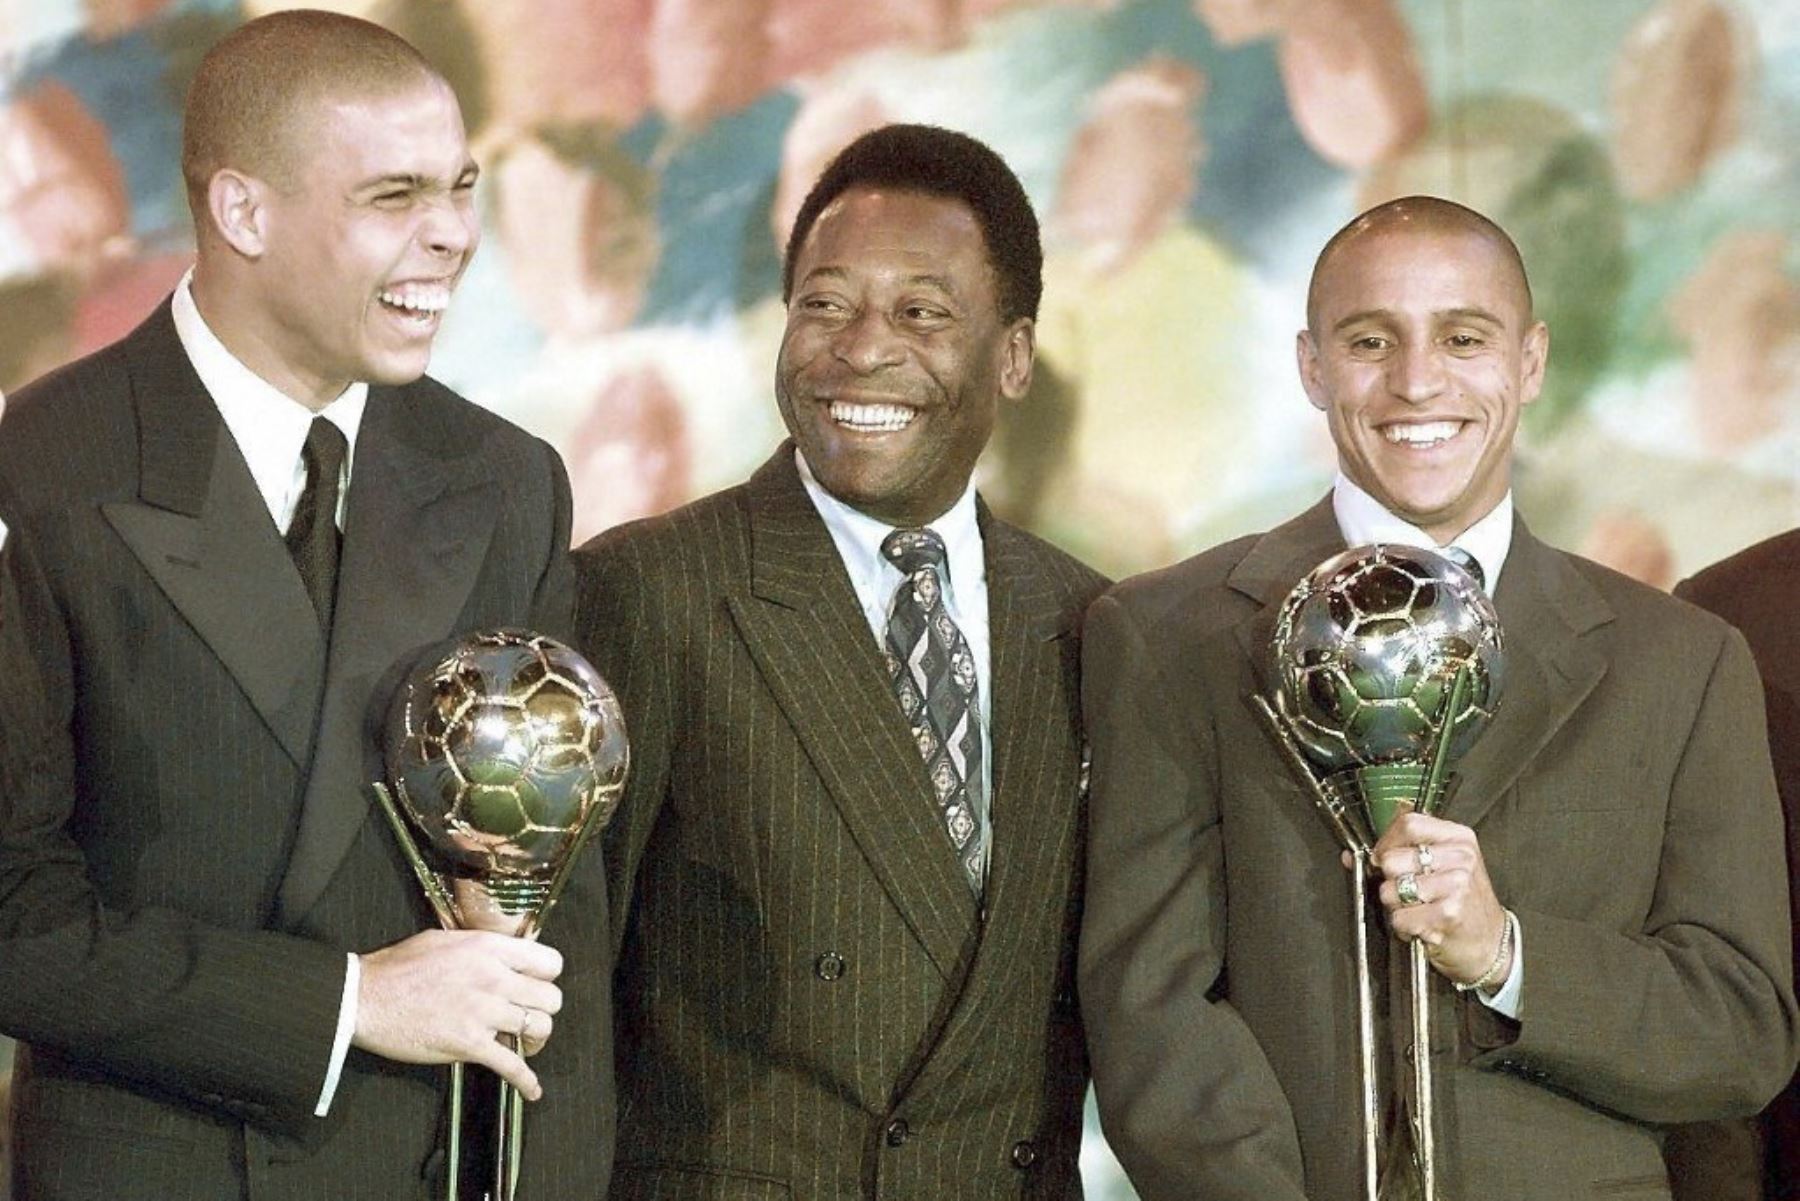 Los futbolistas brasileños Ronaldo (izquierda) y Roberto Carlos (derecha) bromean con el ministro brasileño de Deportes, Pelé (centro), en el parque de ocio Eurodisney

Foto:AFP